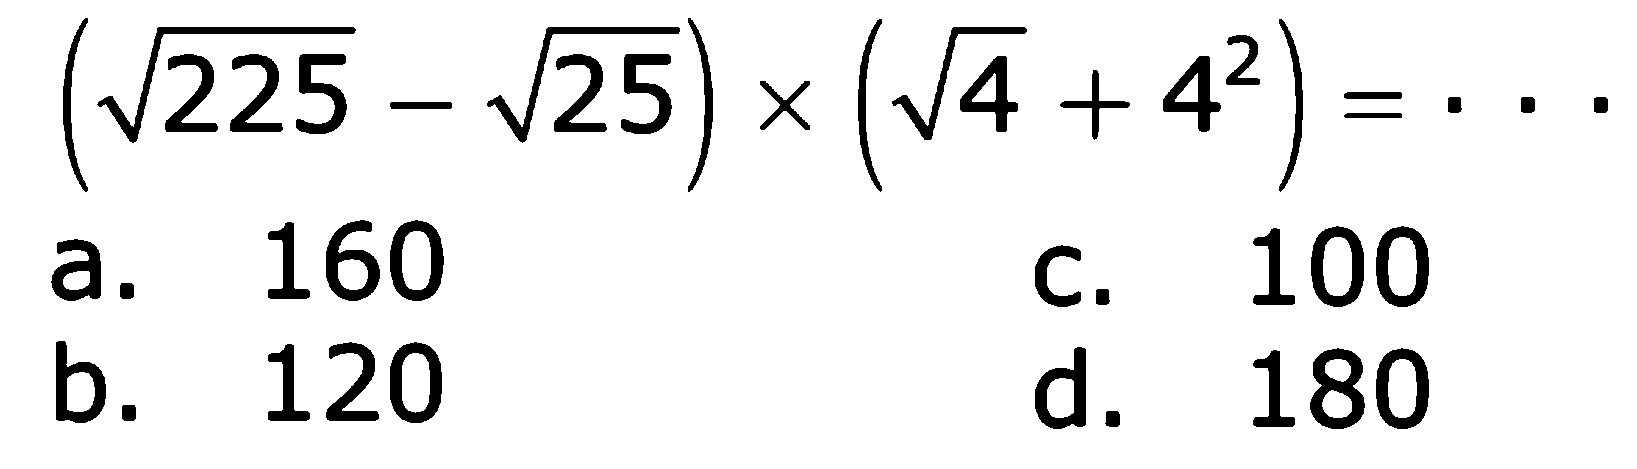 (akar(225) - akar(25)) x (akar(4) + 4^2) = ...